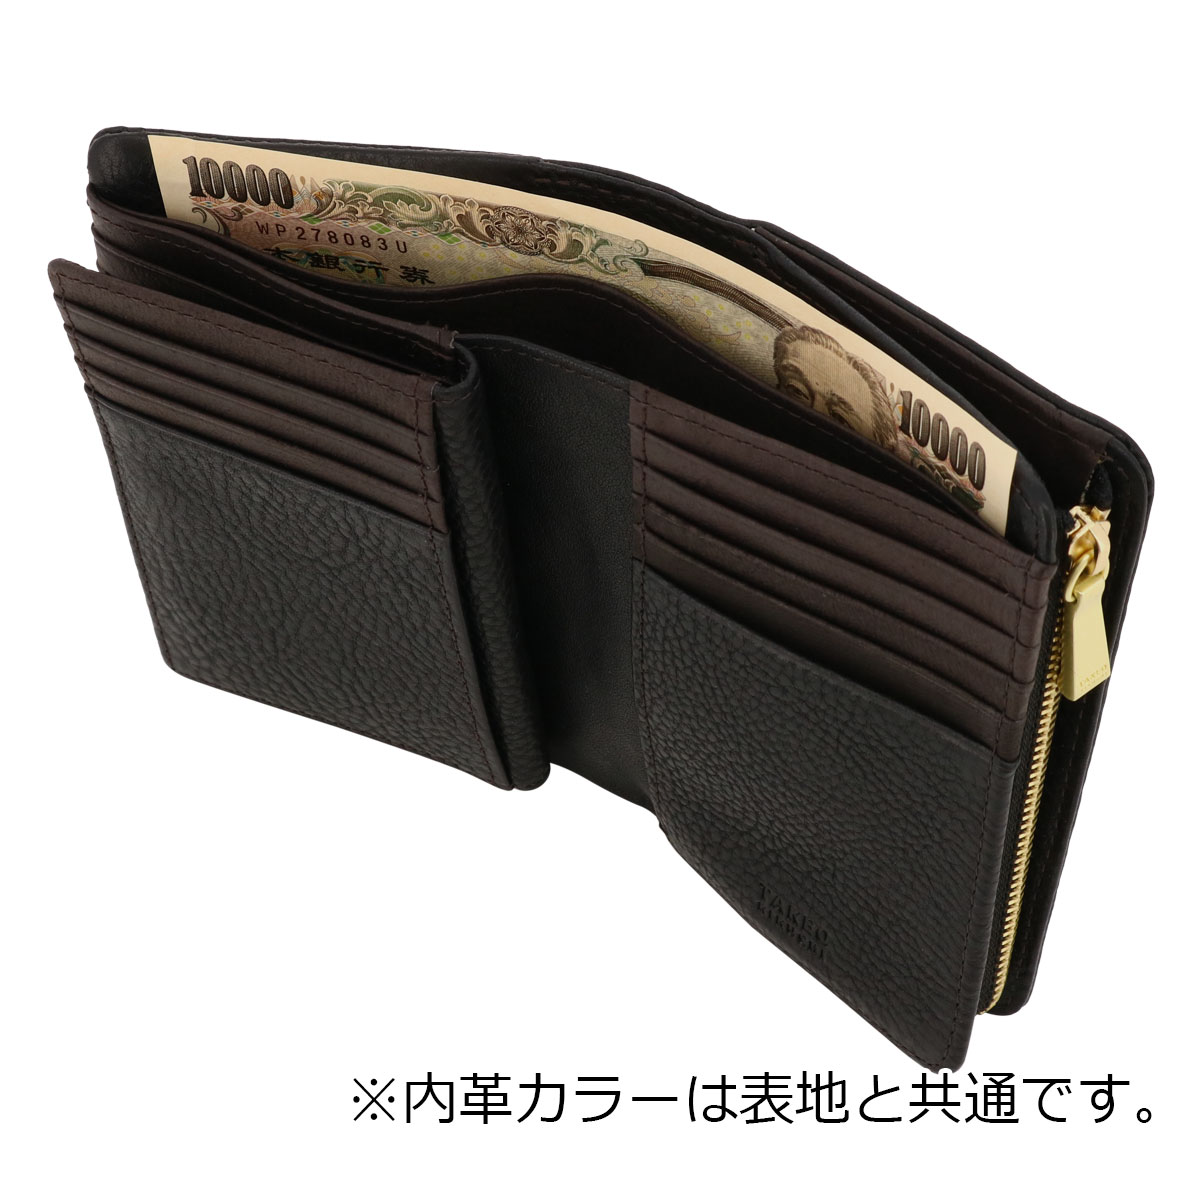 タケオキクチ 財布 二つ折り 本革 メンズ 761604 ソフィア TAKEO 